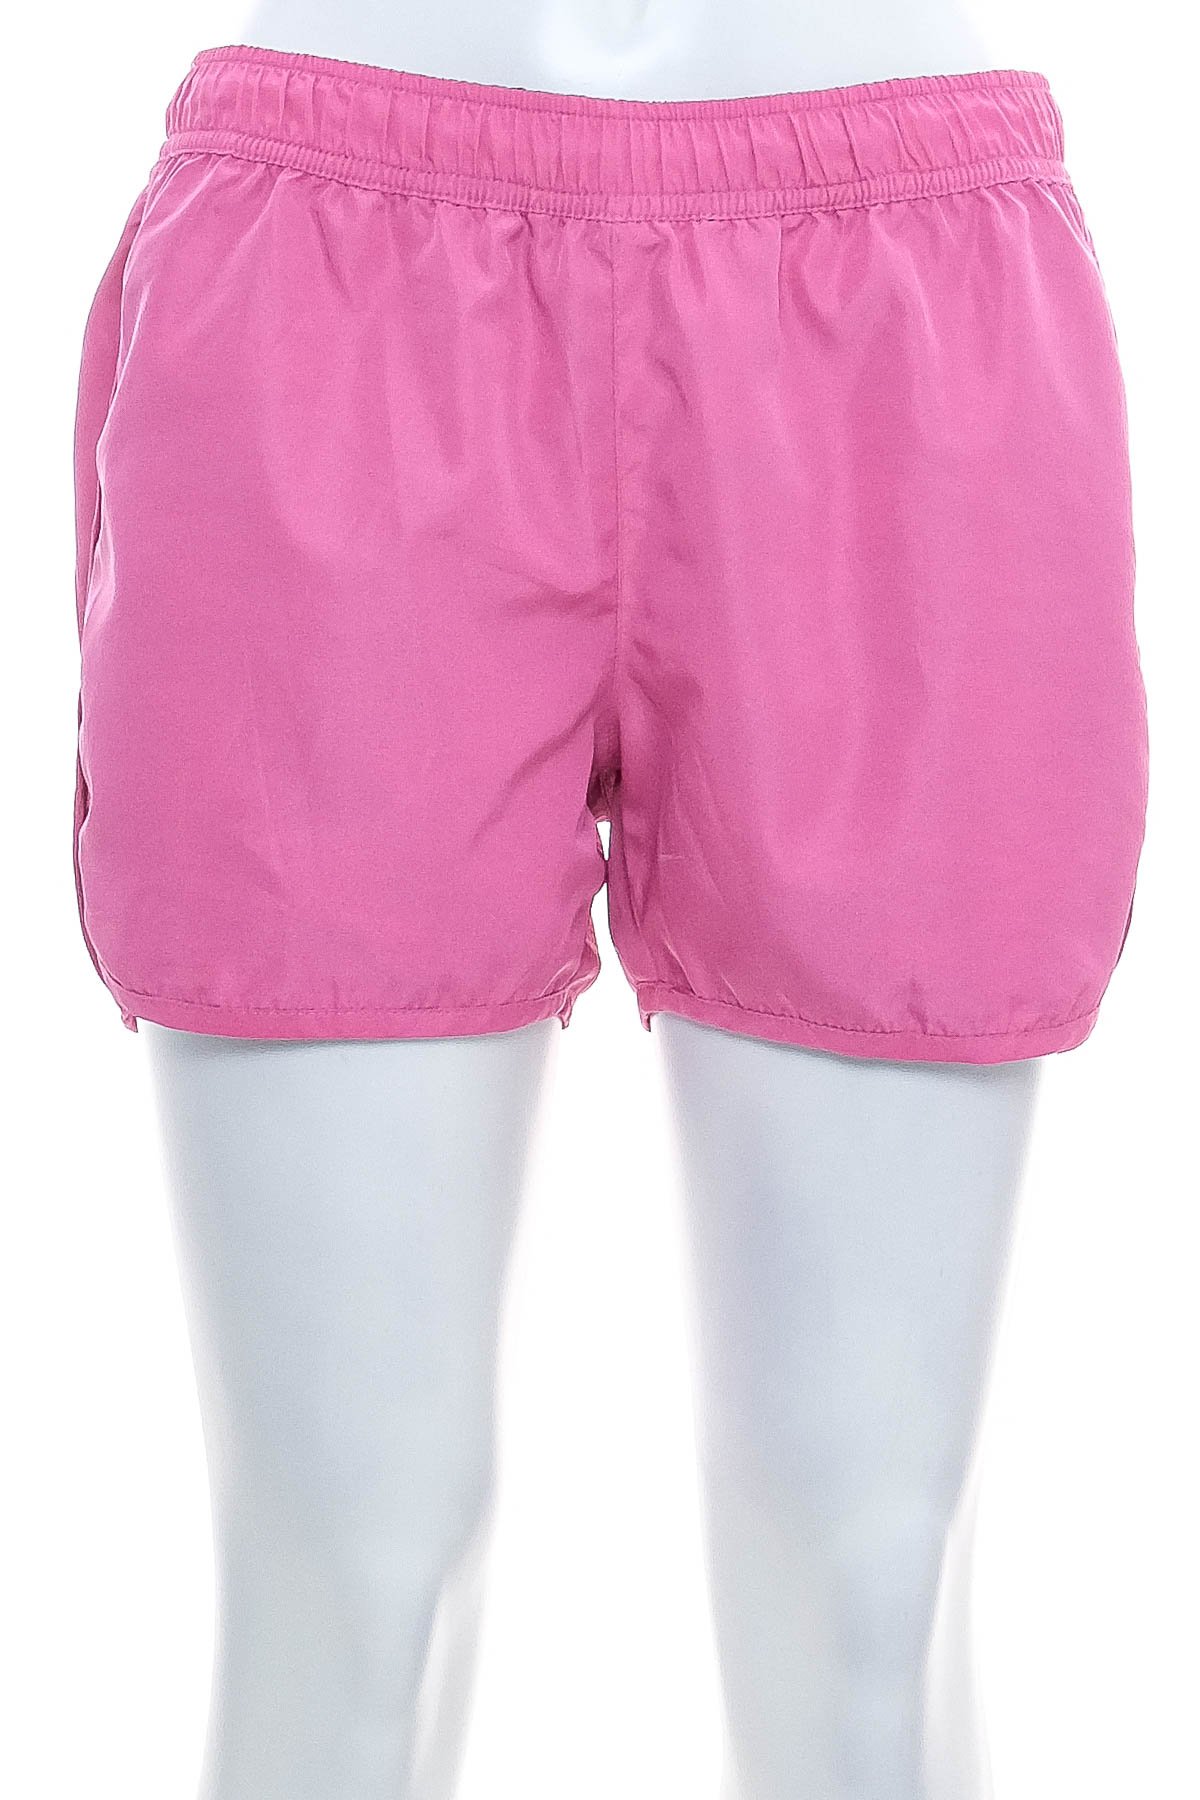 Women's shorts reversible - TCM - 1